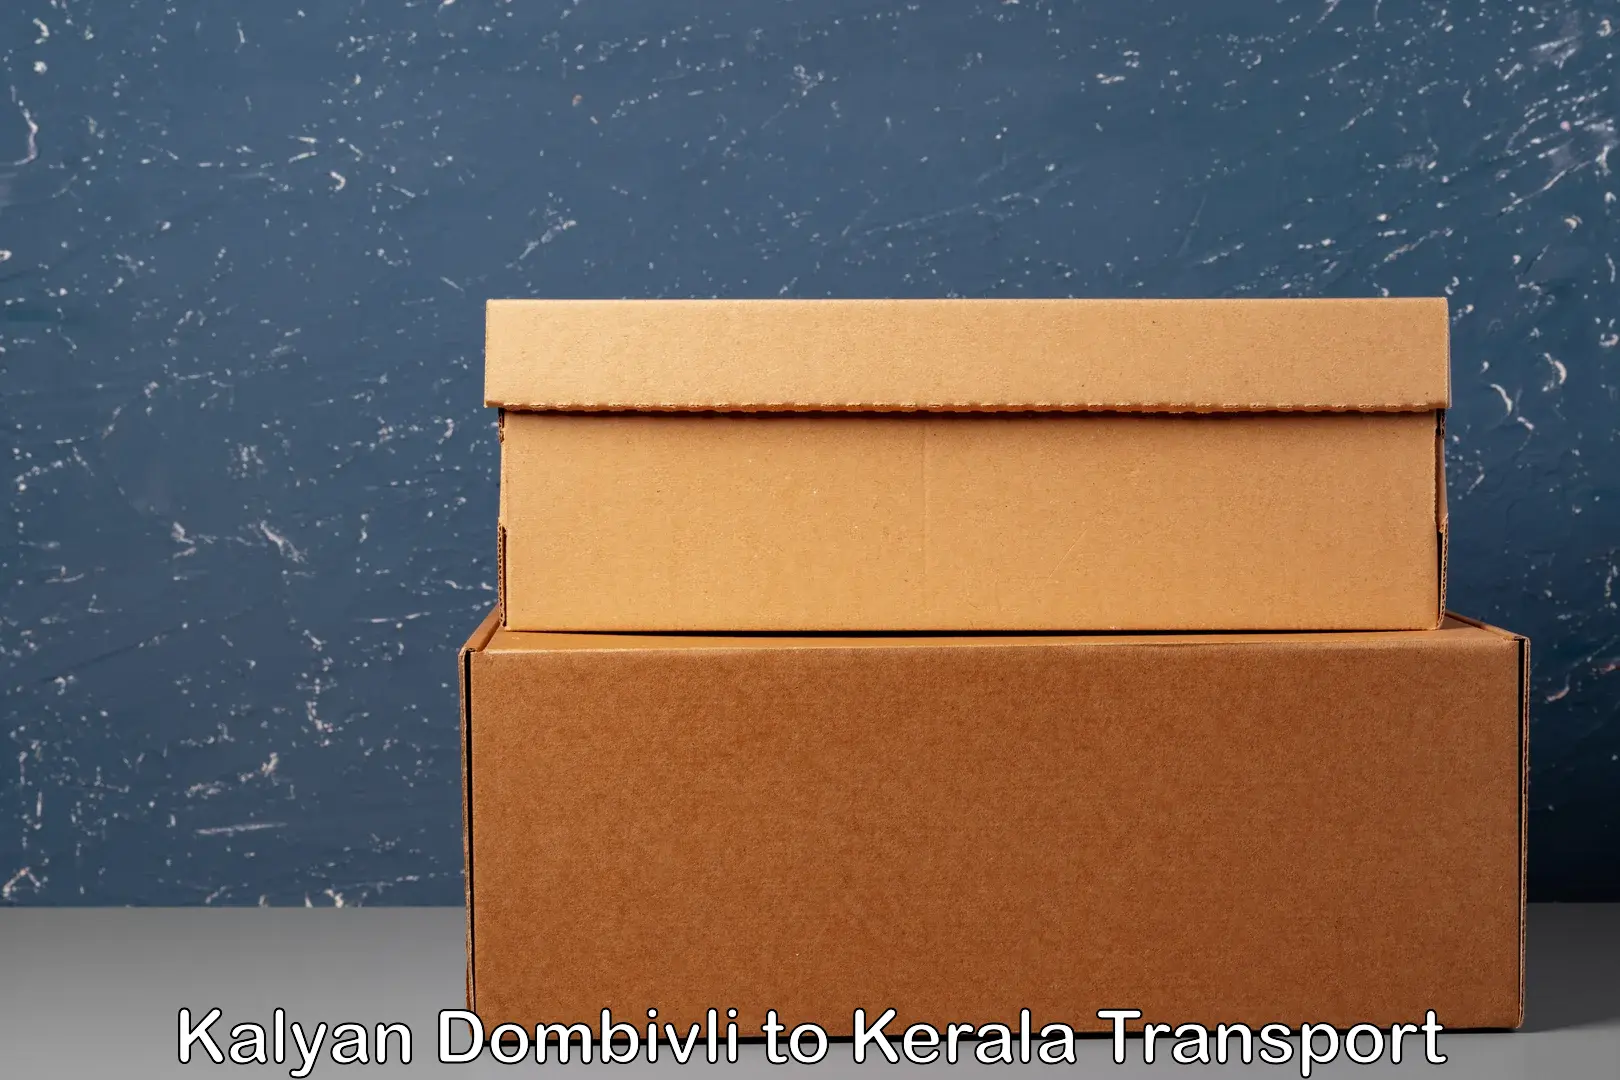 Online transport service Kalyan Dombivli to Kozhikode